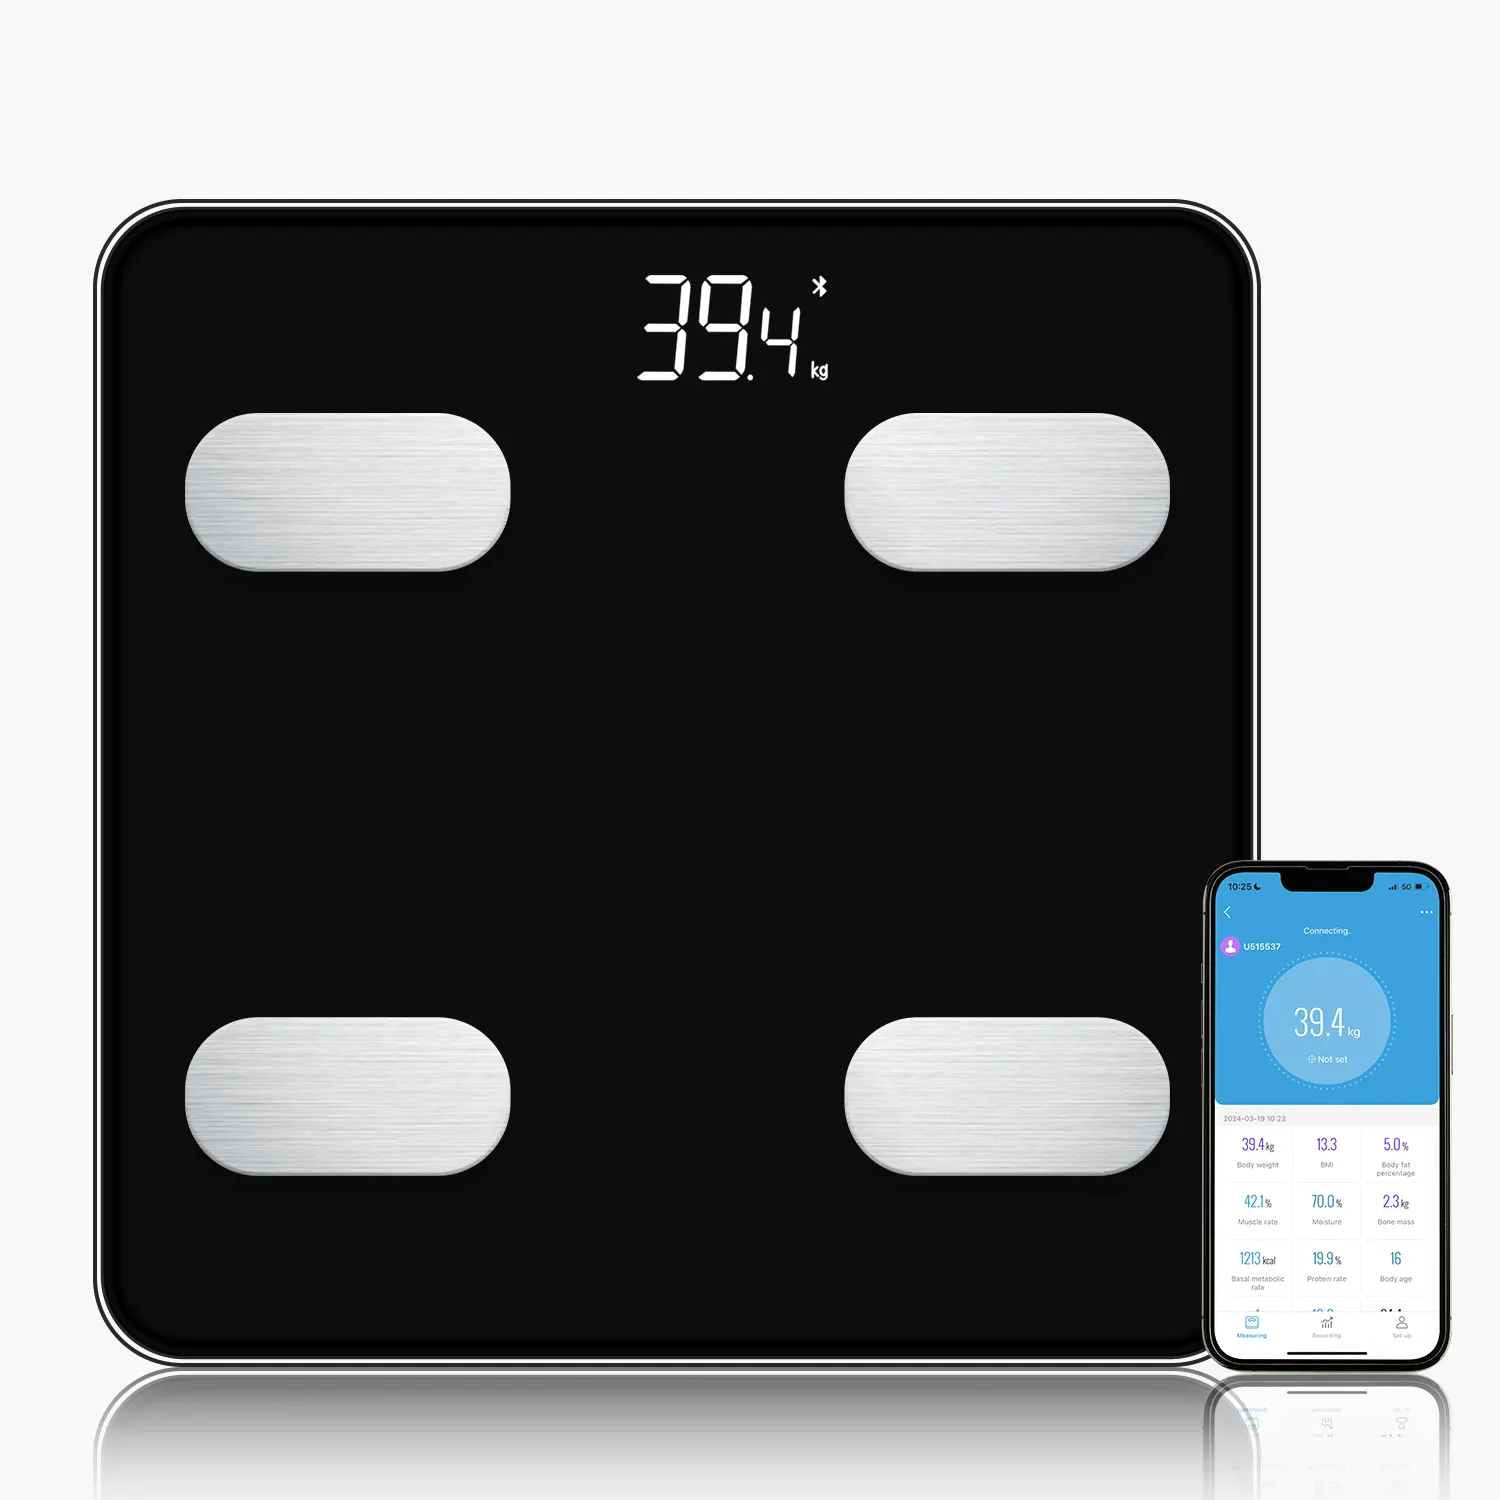 ميزان حمام رقمي ذكي للياقة البدنية مقياس وزن إلكتروني بشاشة ليد لعرض أوزان الدهون في الجسم محلل Bmi